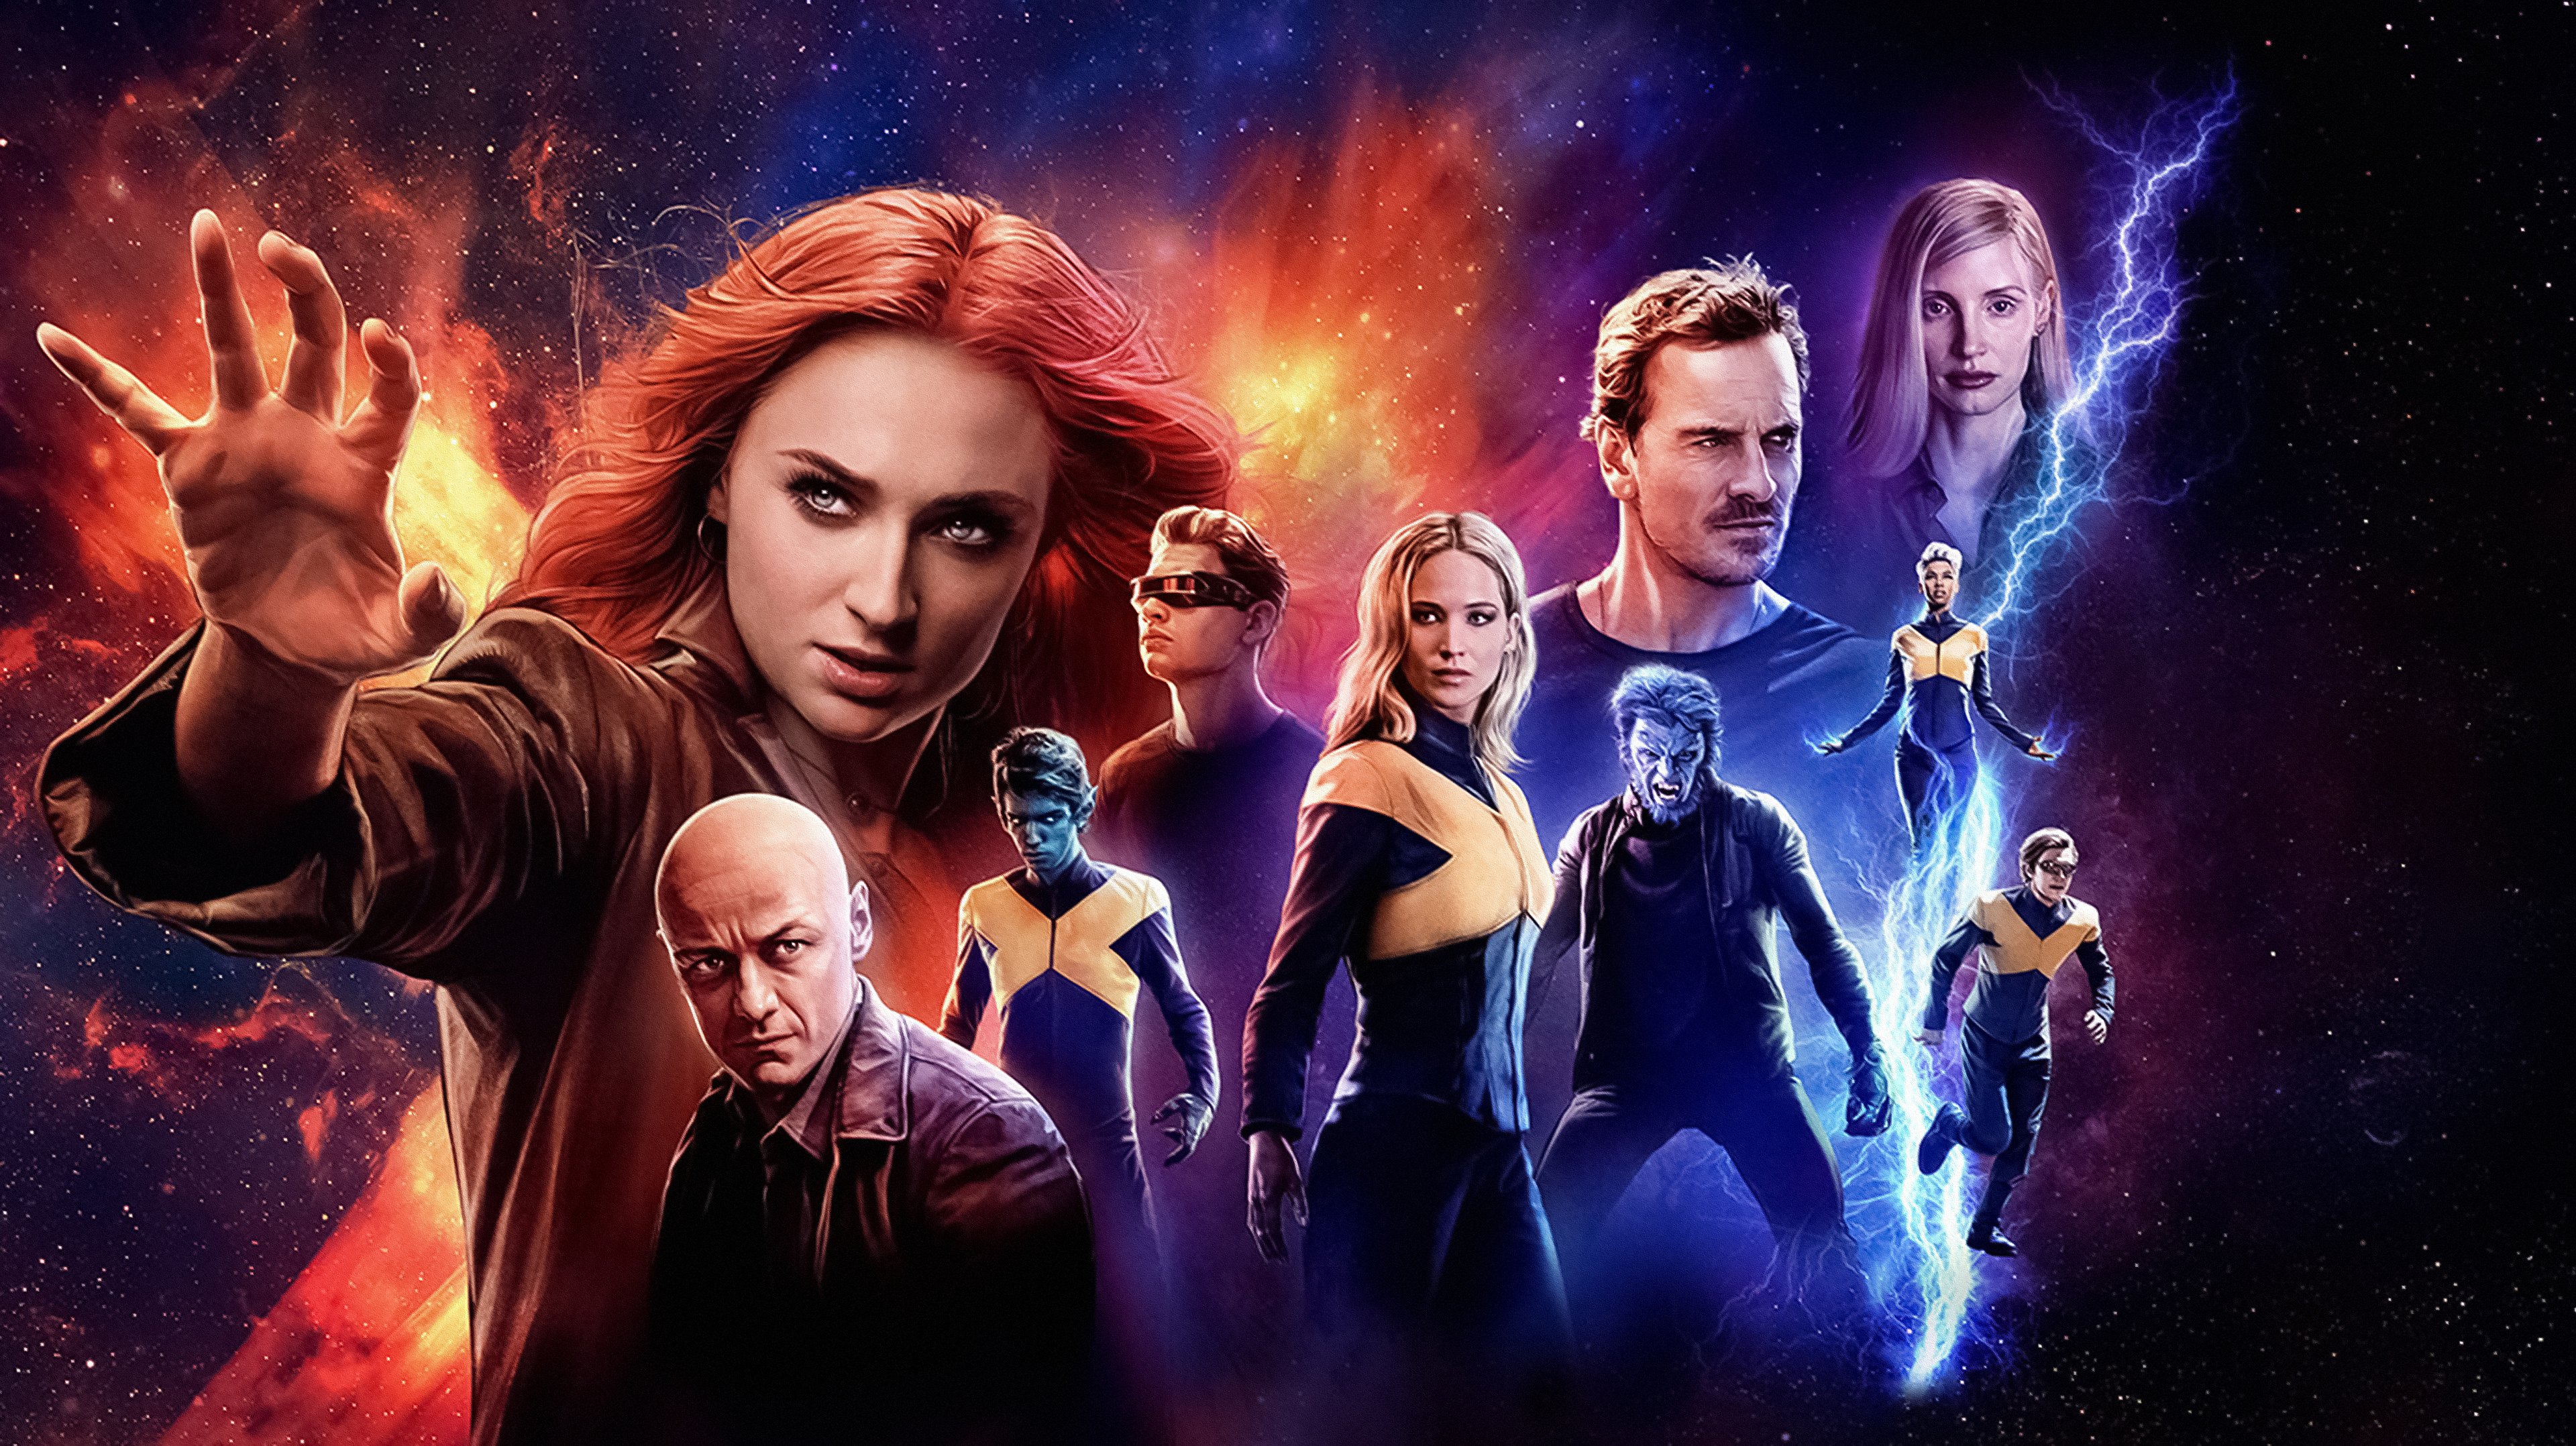 X-Men Dark Phoenix 2019 Movie Poster Wallpapers